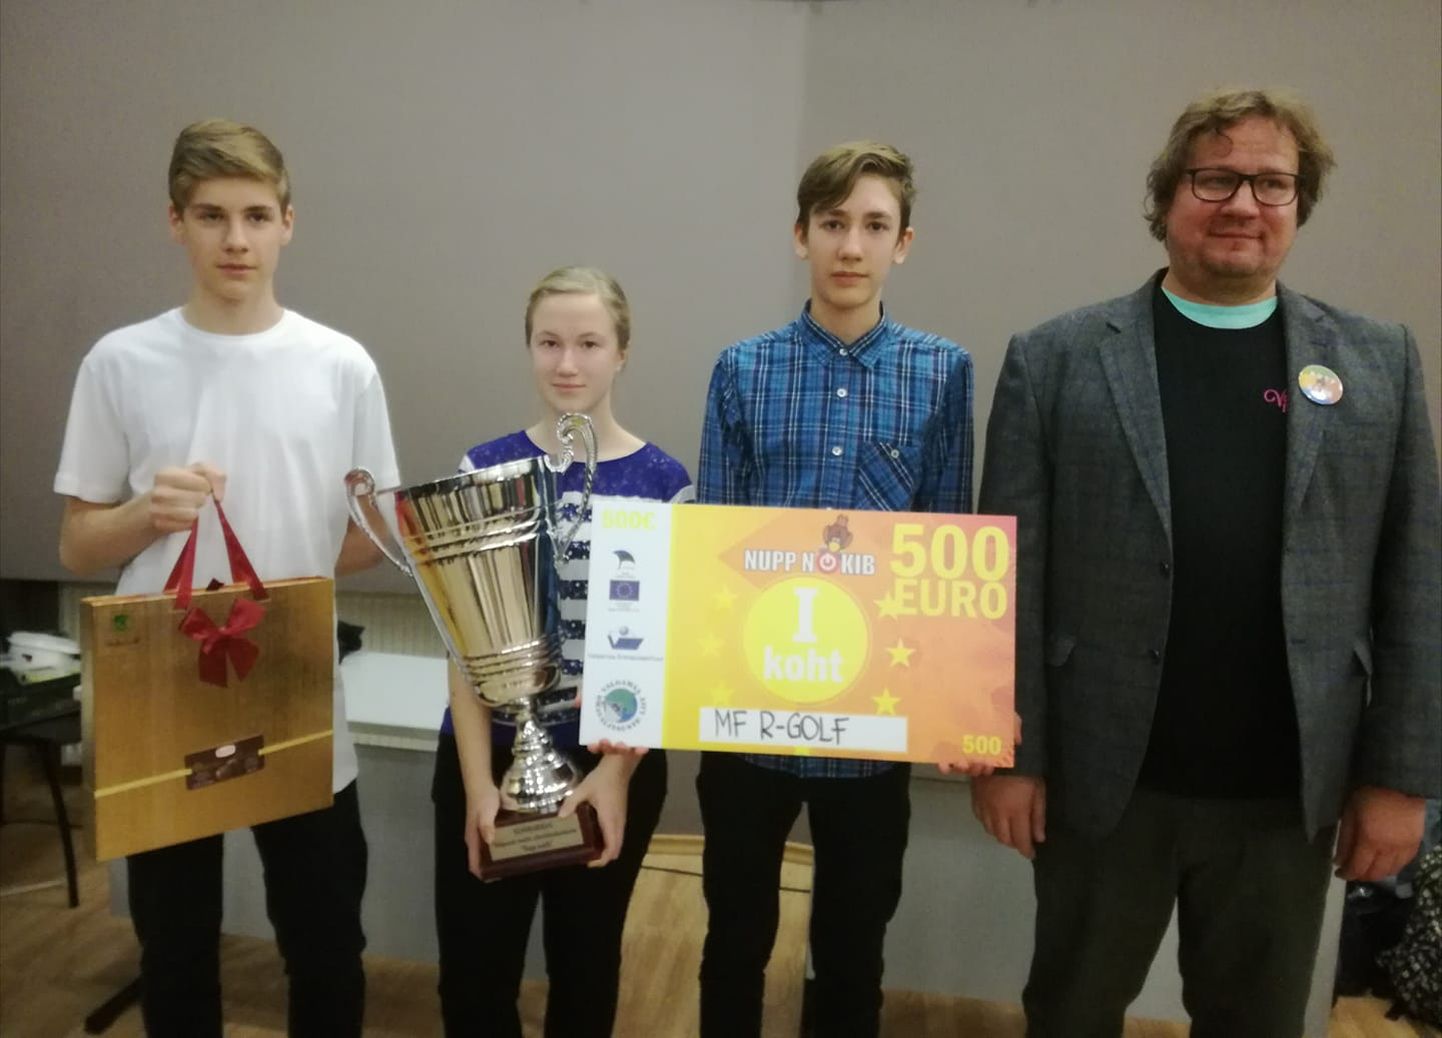 Valgamaa noorte ettevõtluskonkursi «Nupp nokib» võitis Hargla kooli minifirma R- Golf koosseisus Piia Ruotsi, Rainer Truks ja Airo Pettai. Neid juhendab Marek Mekk.